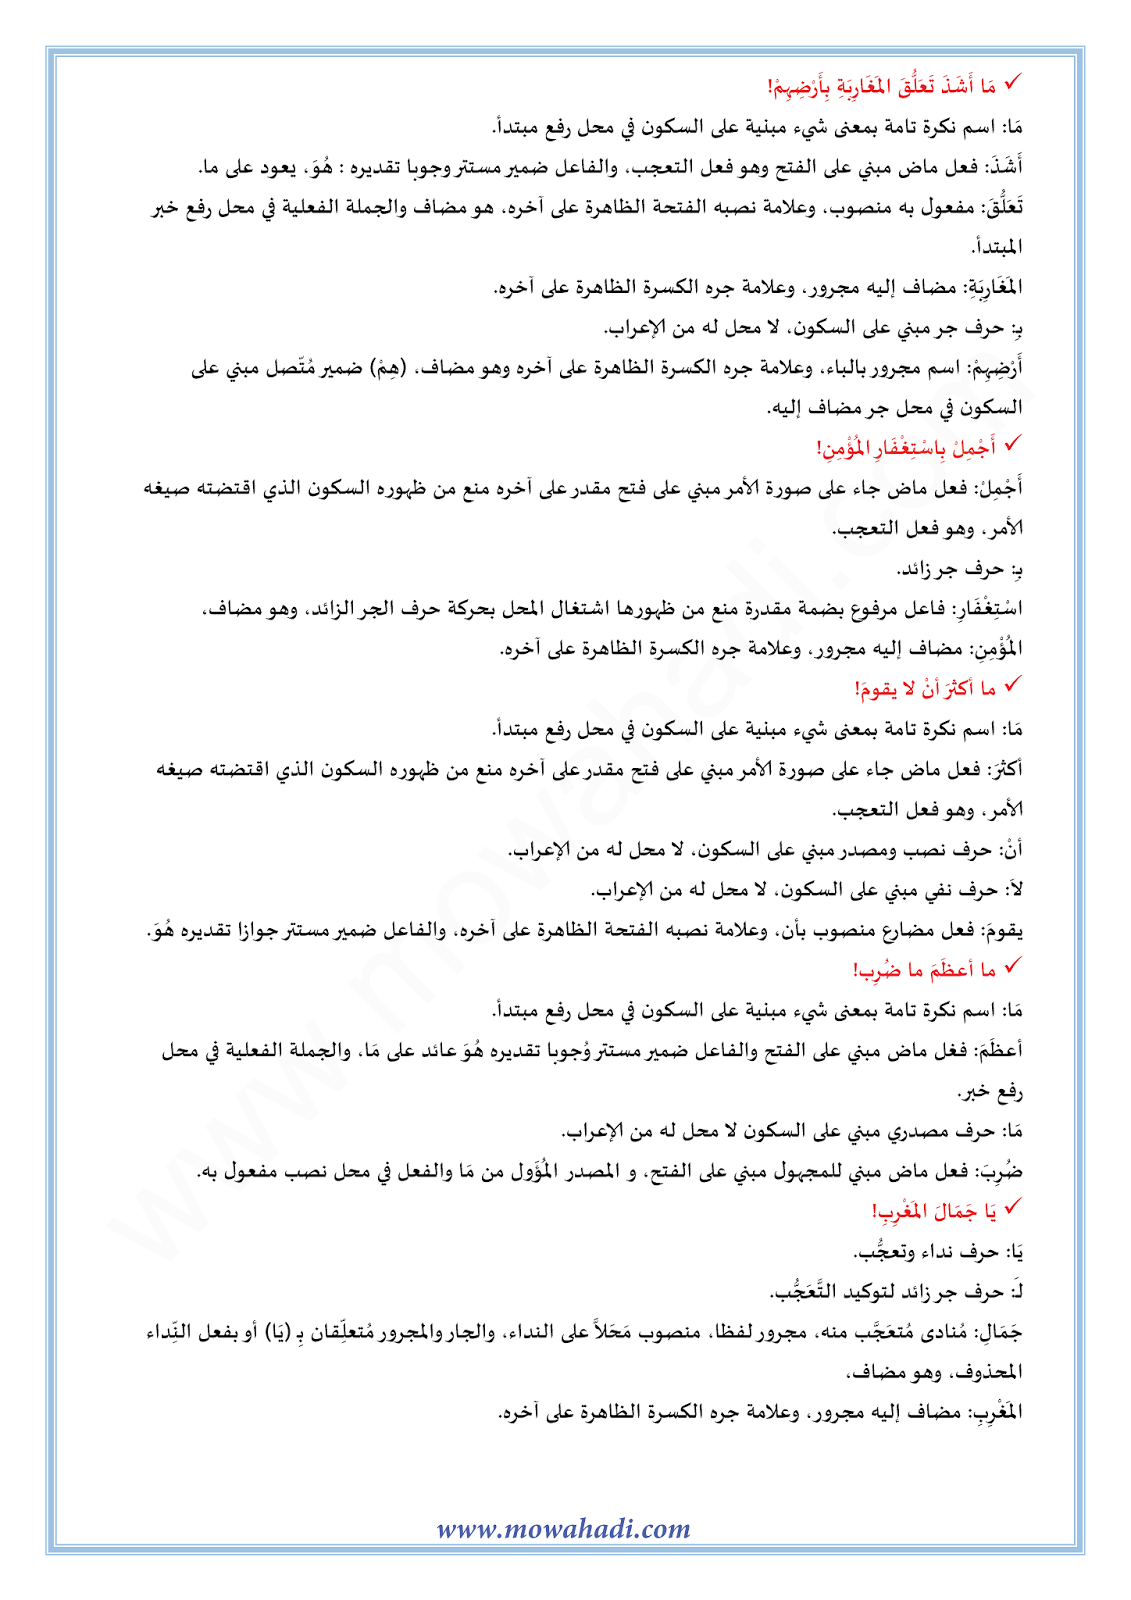 الدرس اللغوي أسلوب التعجب للسنة الثالثة اعدادي في مادة اللغة العربية 9-cours-dars-loghawi3_003